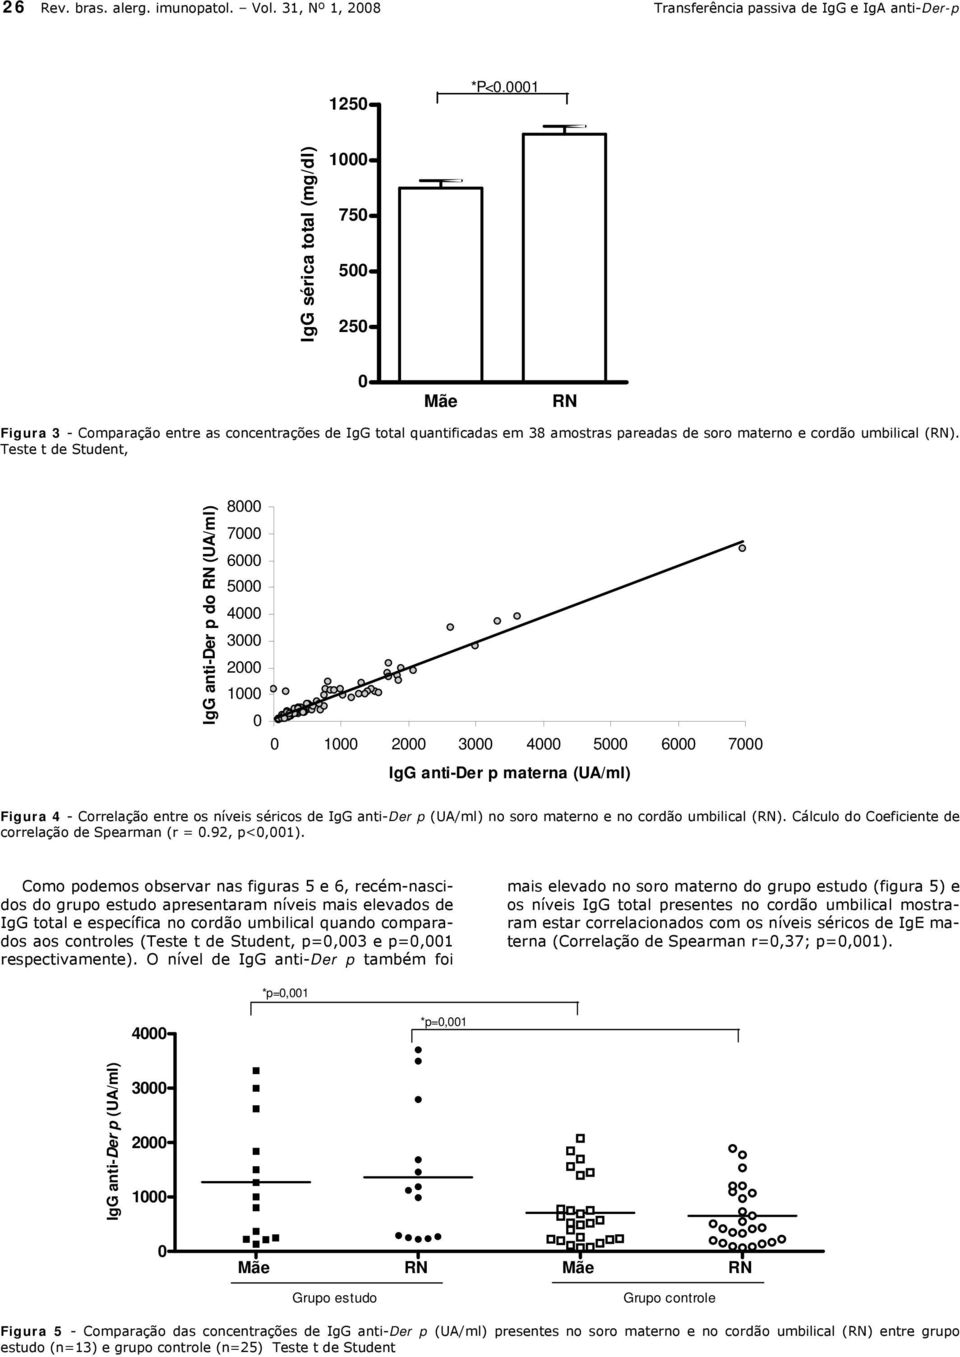 Teste t de Student, IgG anti-der p do RN (UA/ml) 8 7 6 5 4 3 2 1 1 2 3 4 5 6 7 IgG anti-der p materna (UA/ml) Figura 4 - Correlação entre os níveis séricos de IgG anti-der p (UA/ml) no soro materno e